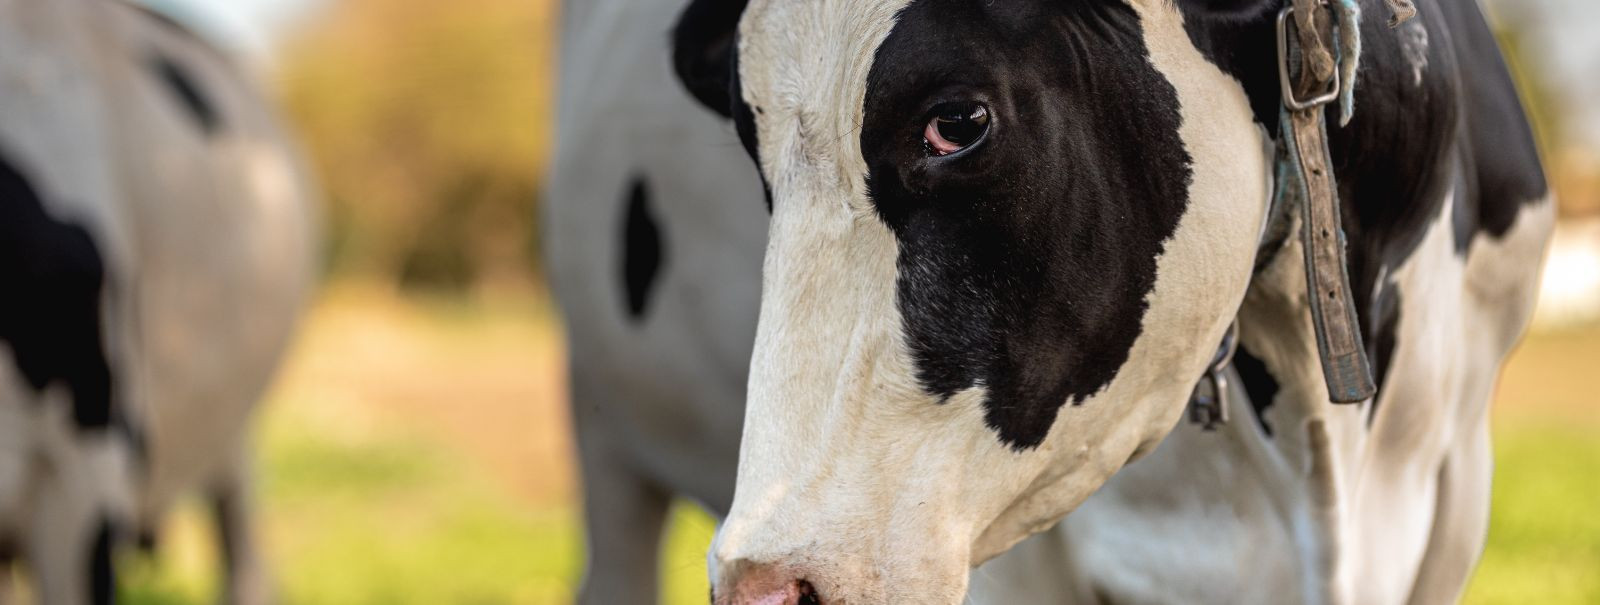 Piimatootjate eesmärk on selge: maksimeerida piimatoodangut ilma karja tervist ohustamata. Toitumisel on selle tasakaalu saavutamisel keskne roll. Hästi toidetu